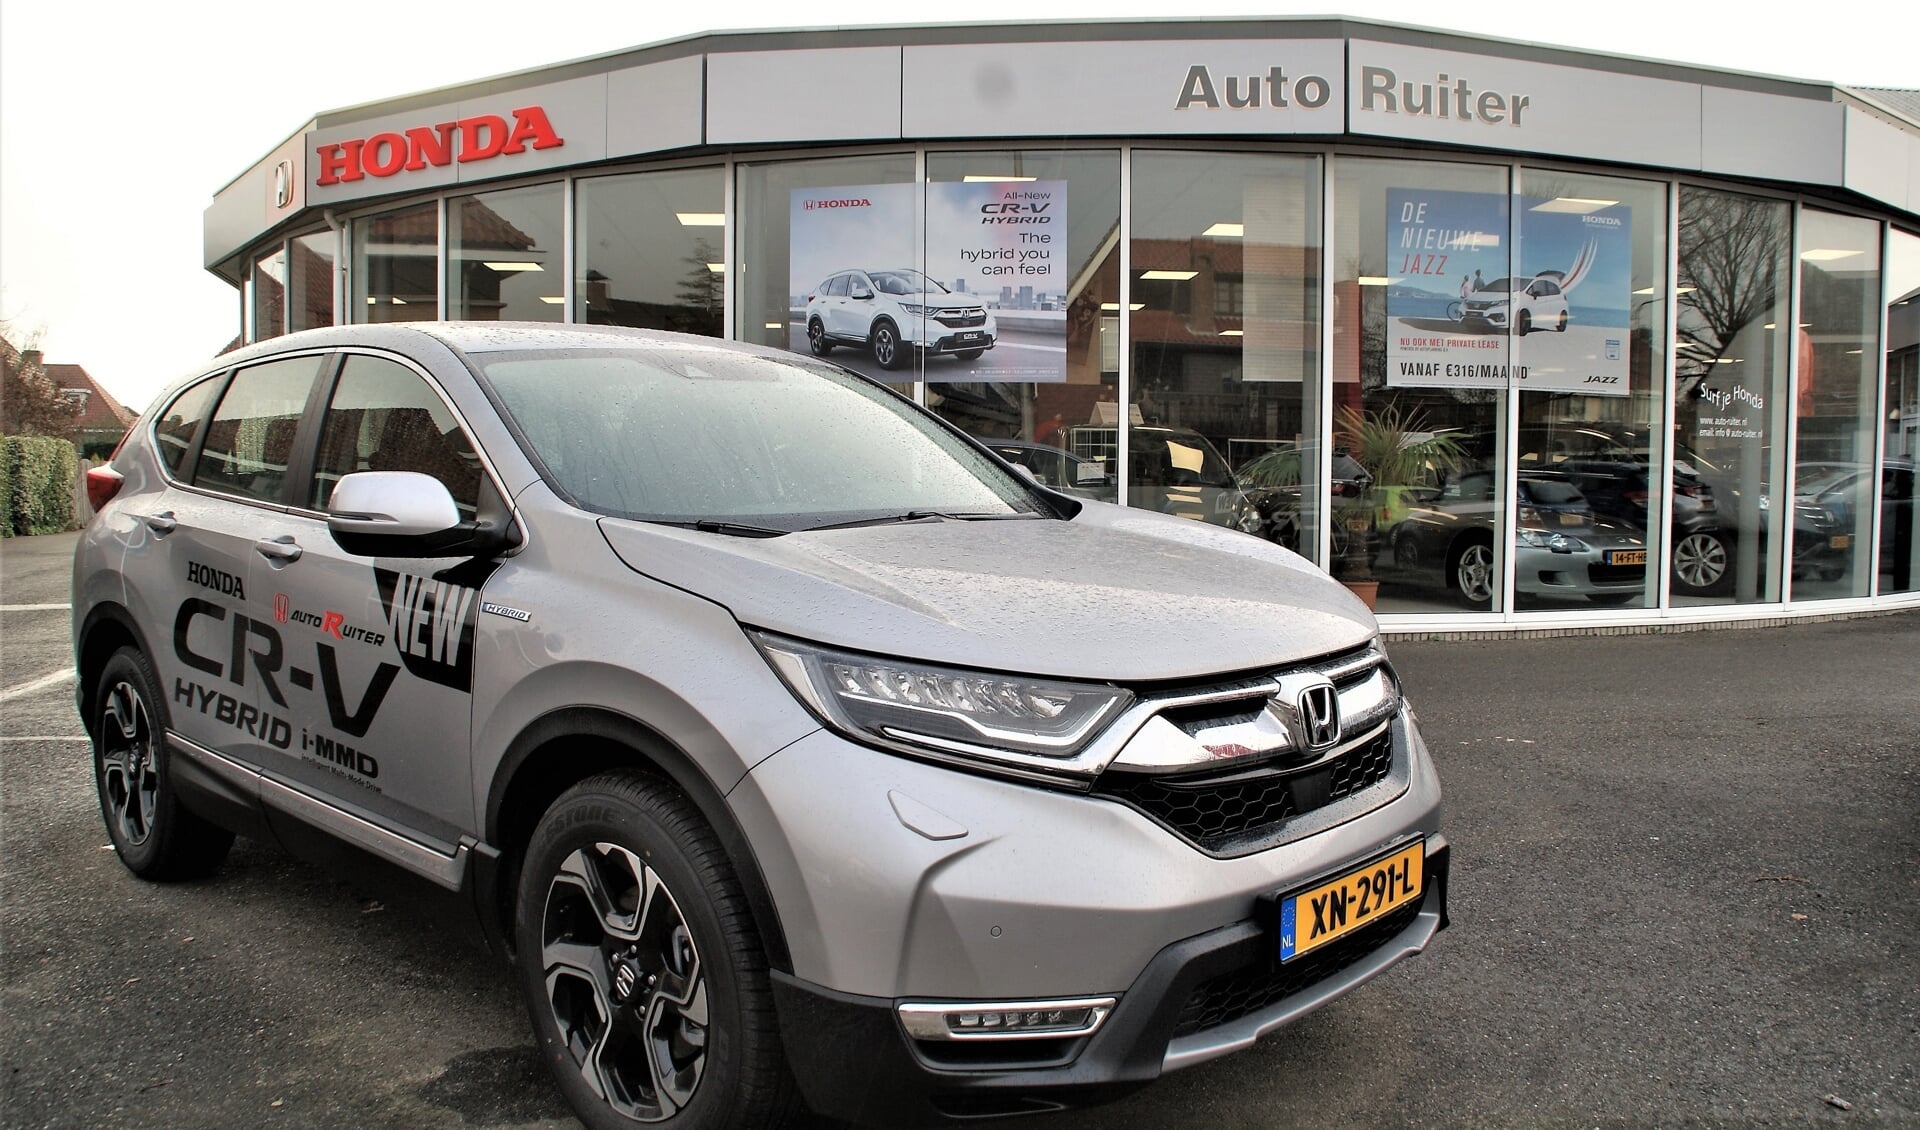 De vernieuwde Honda CR-V in hybrid uitvoering op het terrein van Auto Ruiter in Wateringen.